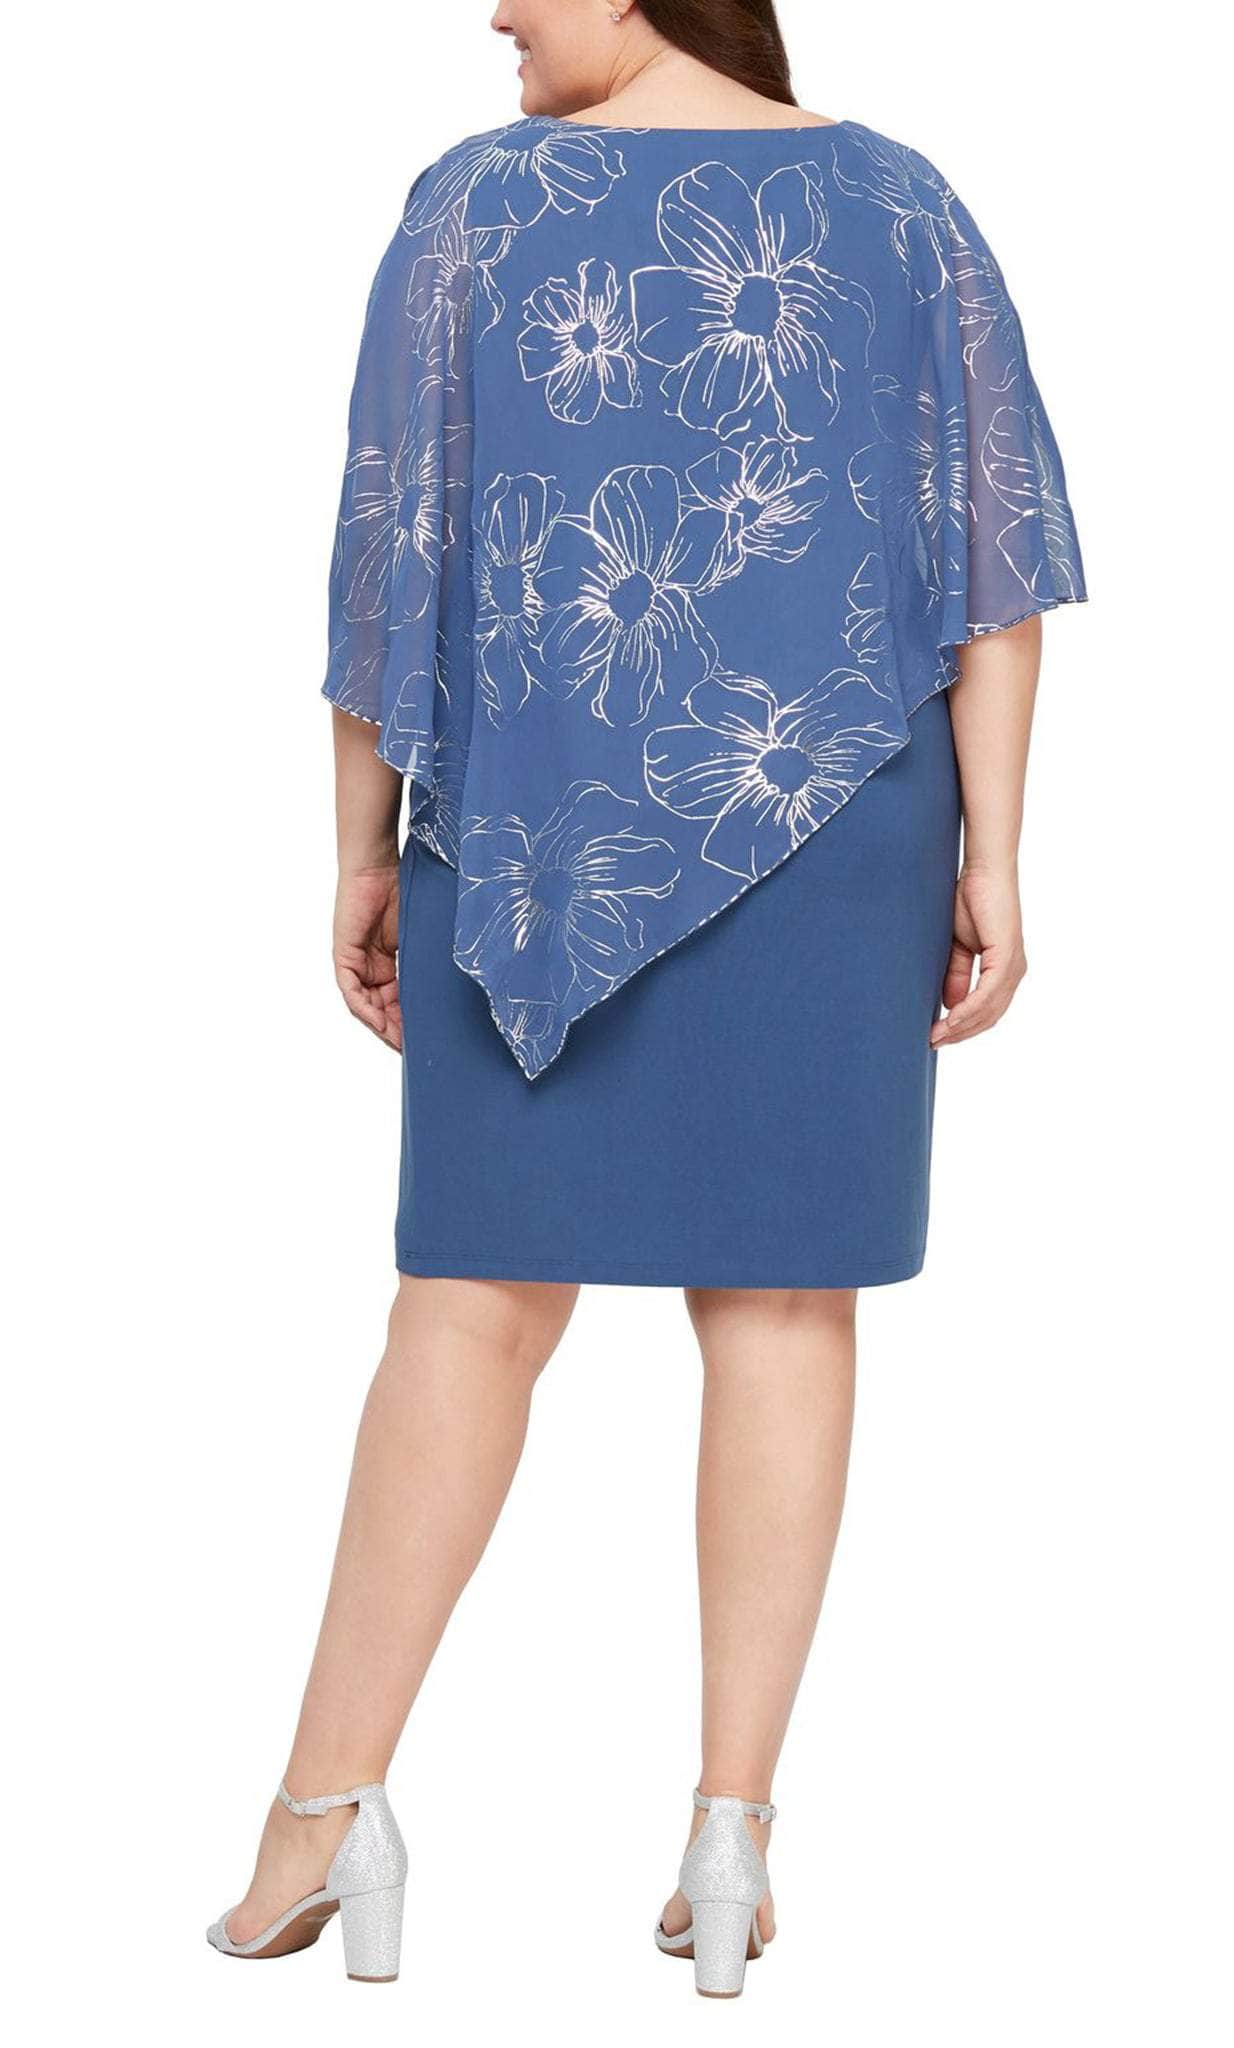 SLNY, SLNY 9479146 - Cape Floral Sheath Dress